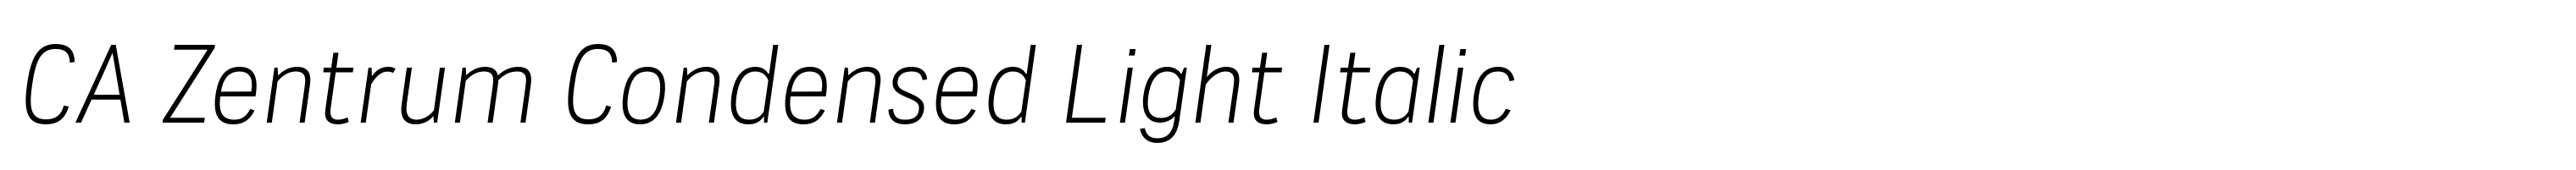 CA Zentrum Condensed Light Italic